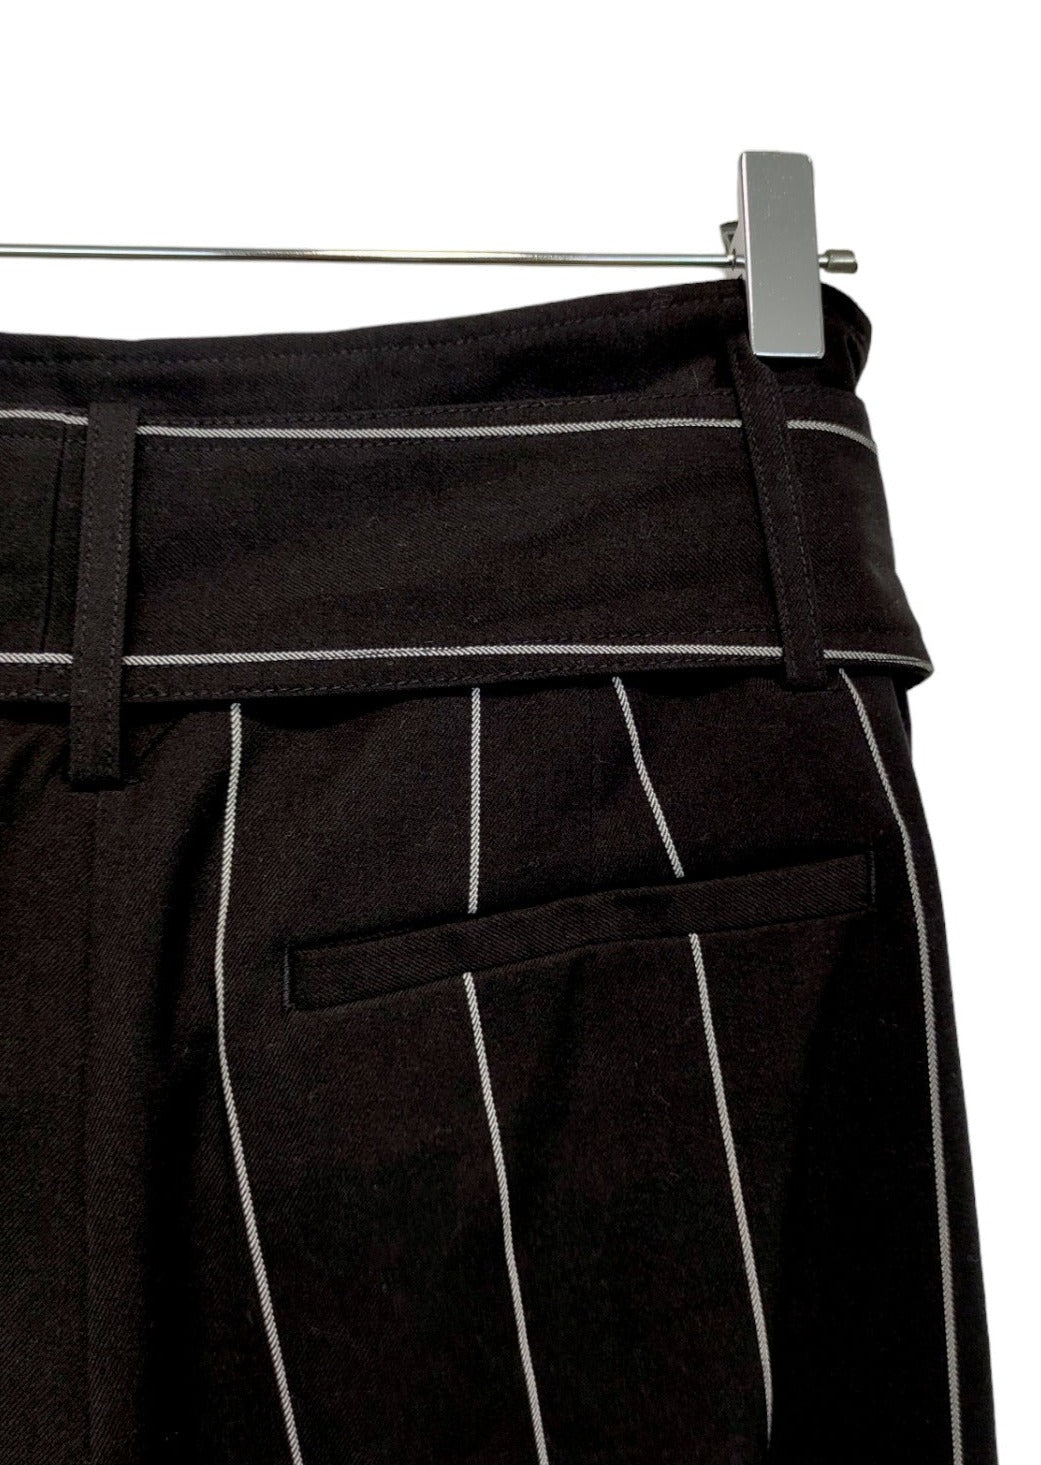 Ριγέ Γυναικείο Παντελόνι M&S COLLECTION σε Μαύρο Χρώμα (Large)